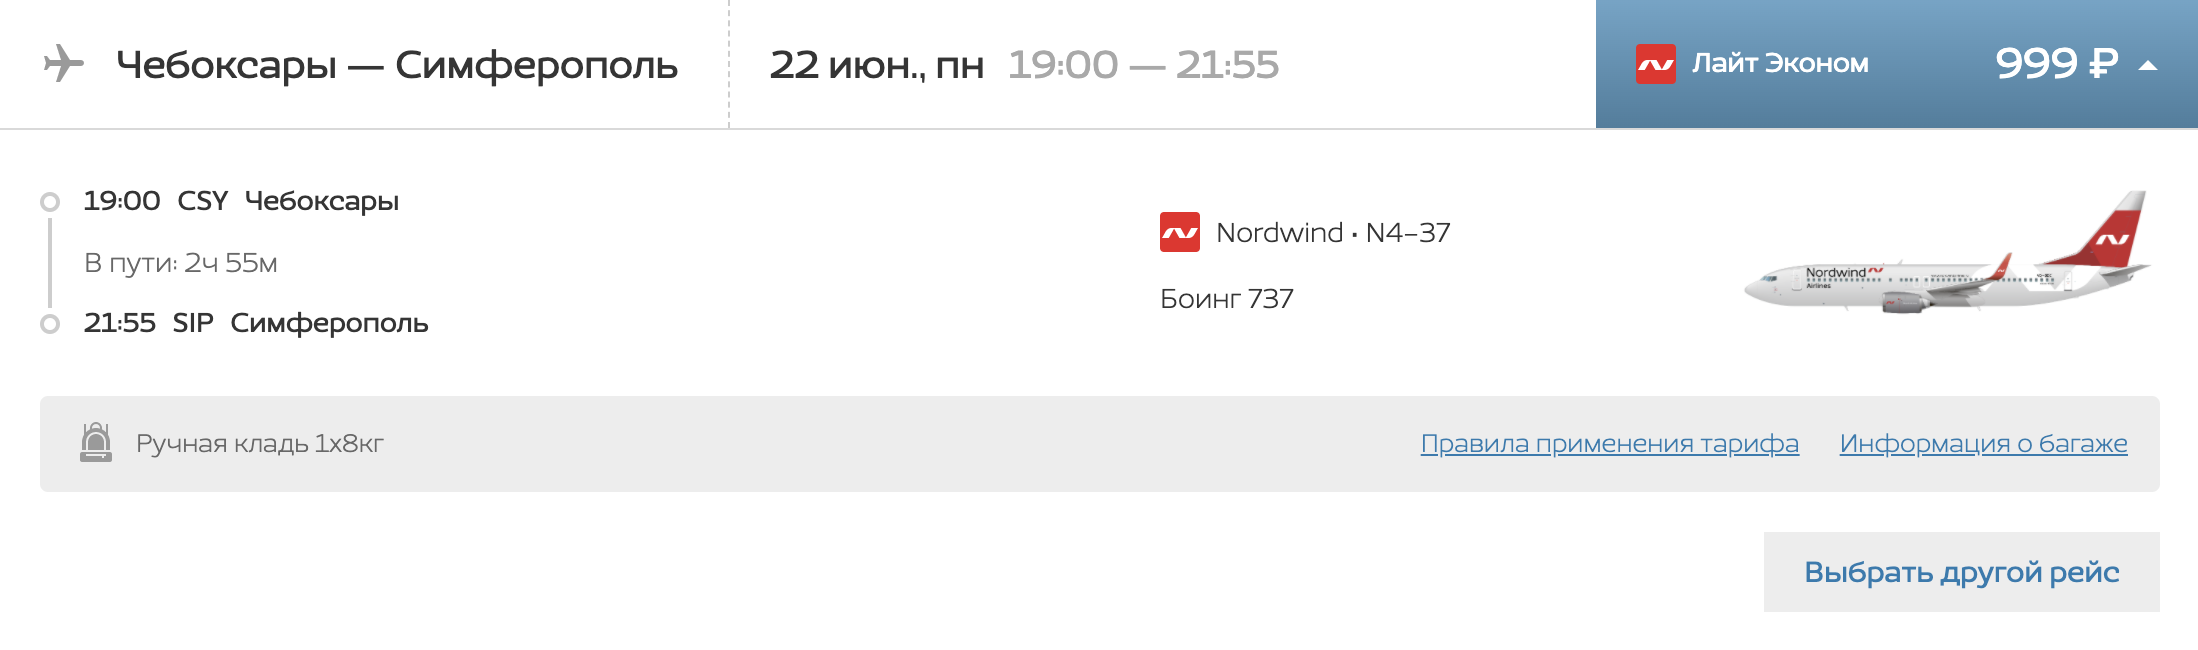 Шереметьево грозный авиабилеты цена москва белорусская самолеты билет